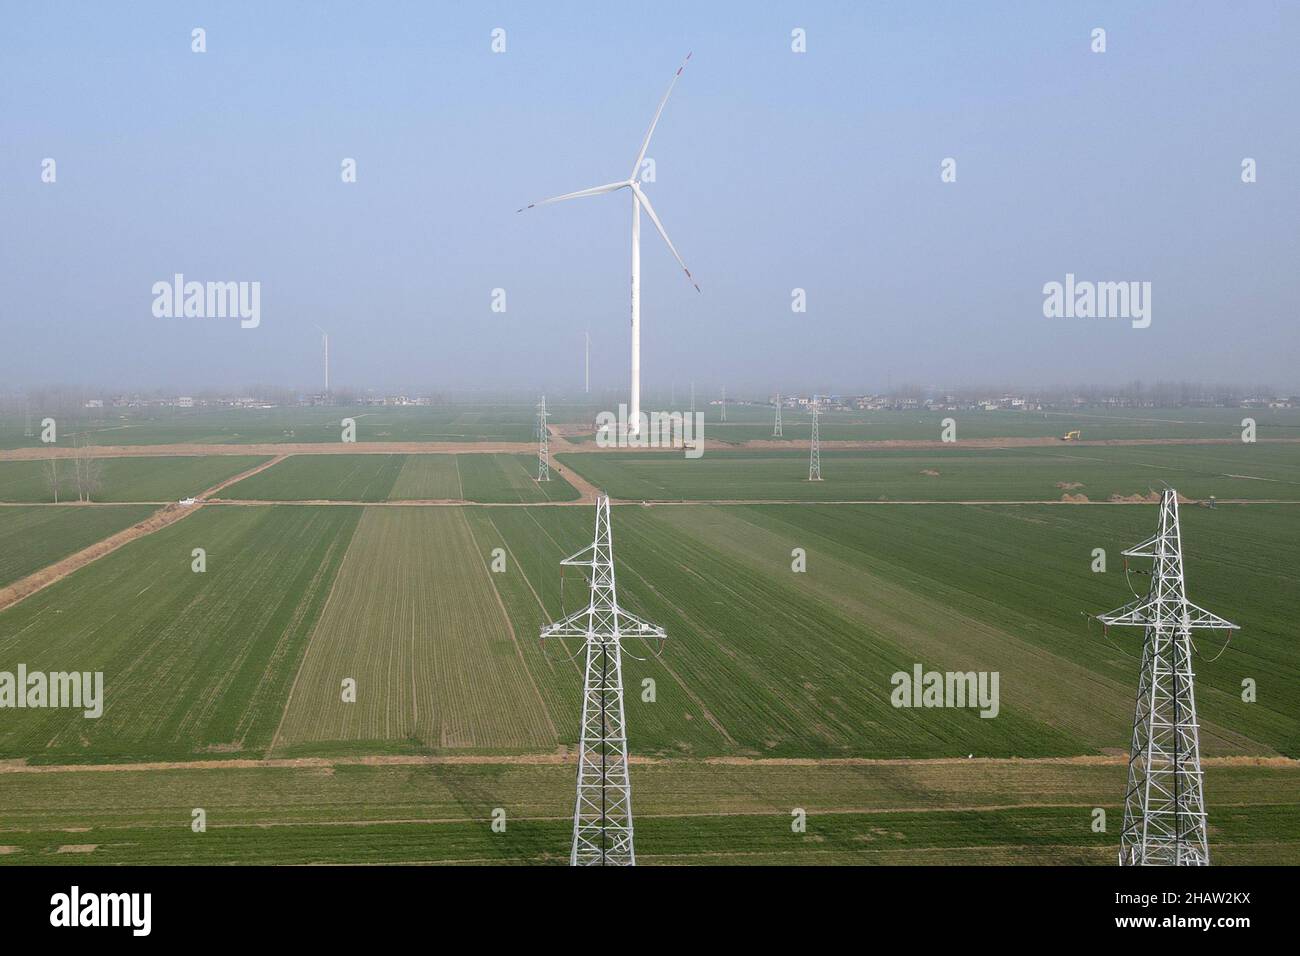 (211215) -- HEFEI, 15. Dezember 2021 (Xinhua) -- Luftfoto vom 14. Dezember 2021 zeigt Windturbinen im Hexin-Windkraftwerk in Bozhou, der ostchinesischen Provinz Anhui. Im Vergleich zu herkömmlichen Windparks ist das Windkraftwerk Hexin Bozhou mit Energiespeichern mit einer Kapazität von 10 MWh ausgestattet. Es kann Strom während der Spitzenzeiten speichern und dann während der Spitzenzeiten freisetzen. Durch die Umverteilung des Stroms während der Spitzen- und Nebenzeiten trägt das „neue Energiespeichersystem“ zum stabilen Betrieb des Stromnetzes und zum neuen Energieverbrauch bei. (X Stockfoto